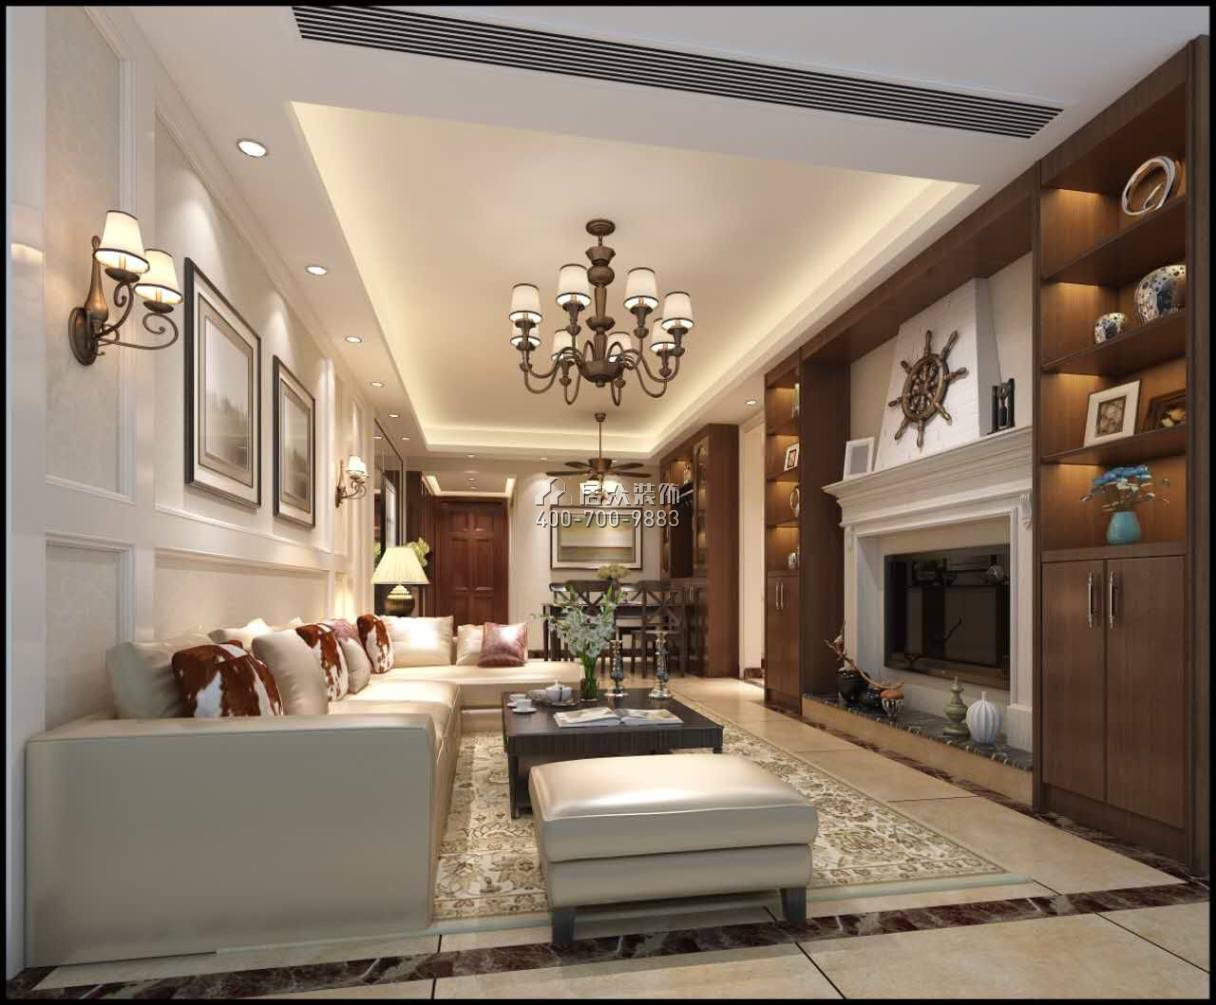 金地鹭湖1号89平方米美式风格平层户型客厅装修效果图